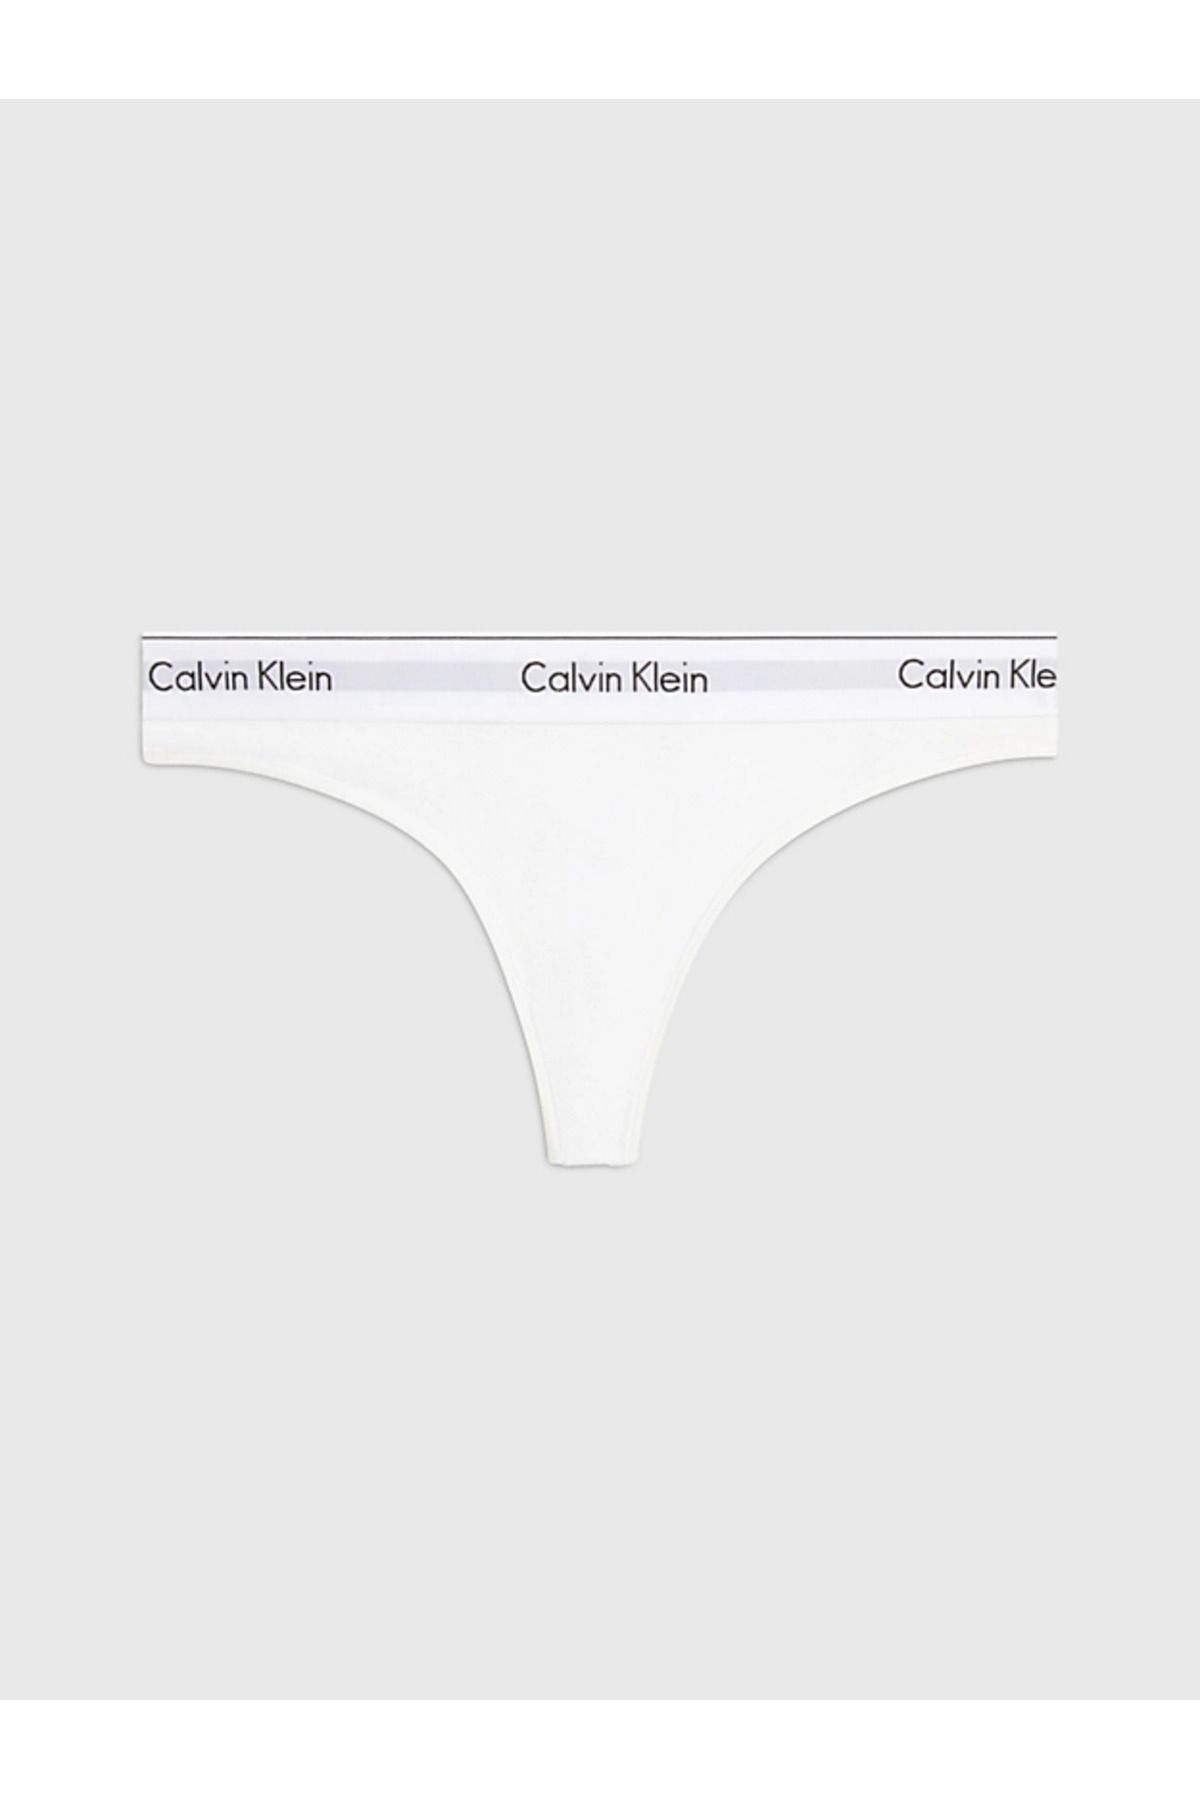 Calvin Klein Kadın Marka Logolu Elastik Bantlı Günlük Kullanıma Uygun White Külot 0000f3786e-100